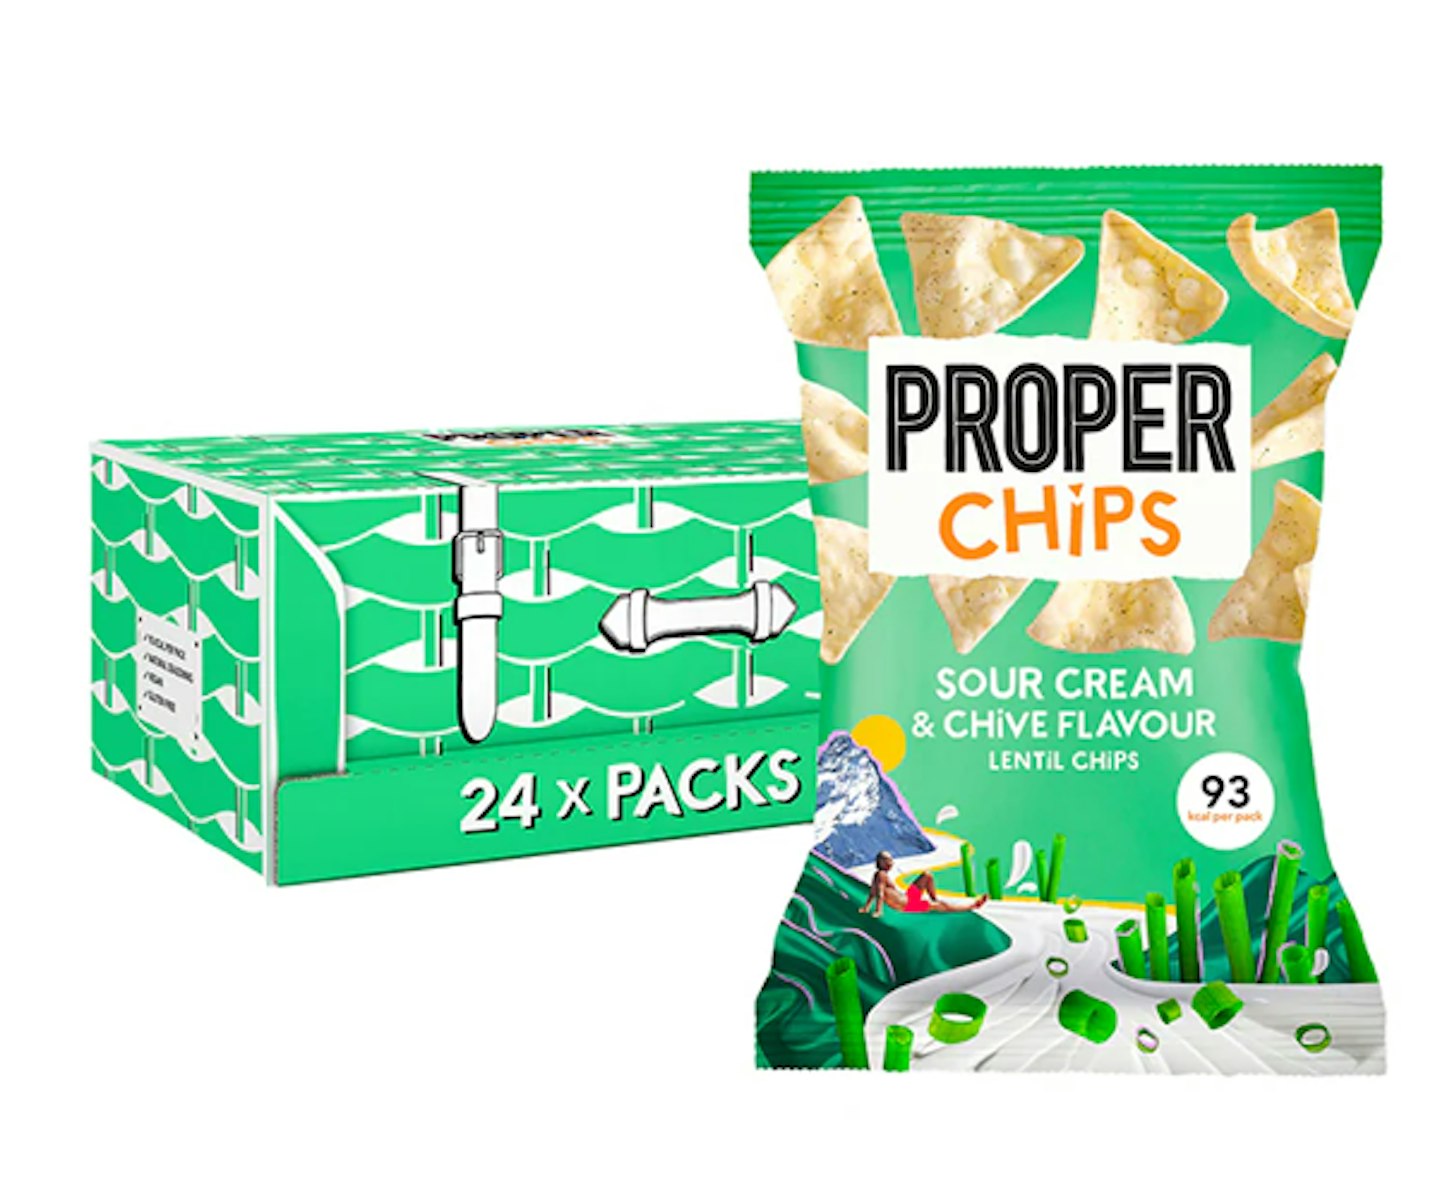 Properchips Sour Cream & Chive Lentil Chips Full Box 24 x 20g